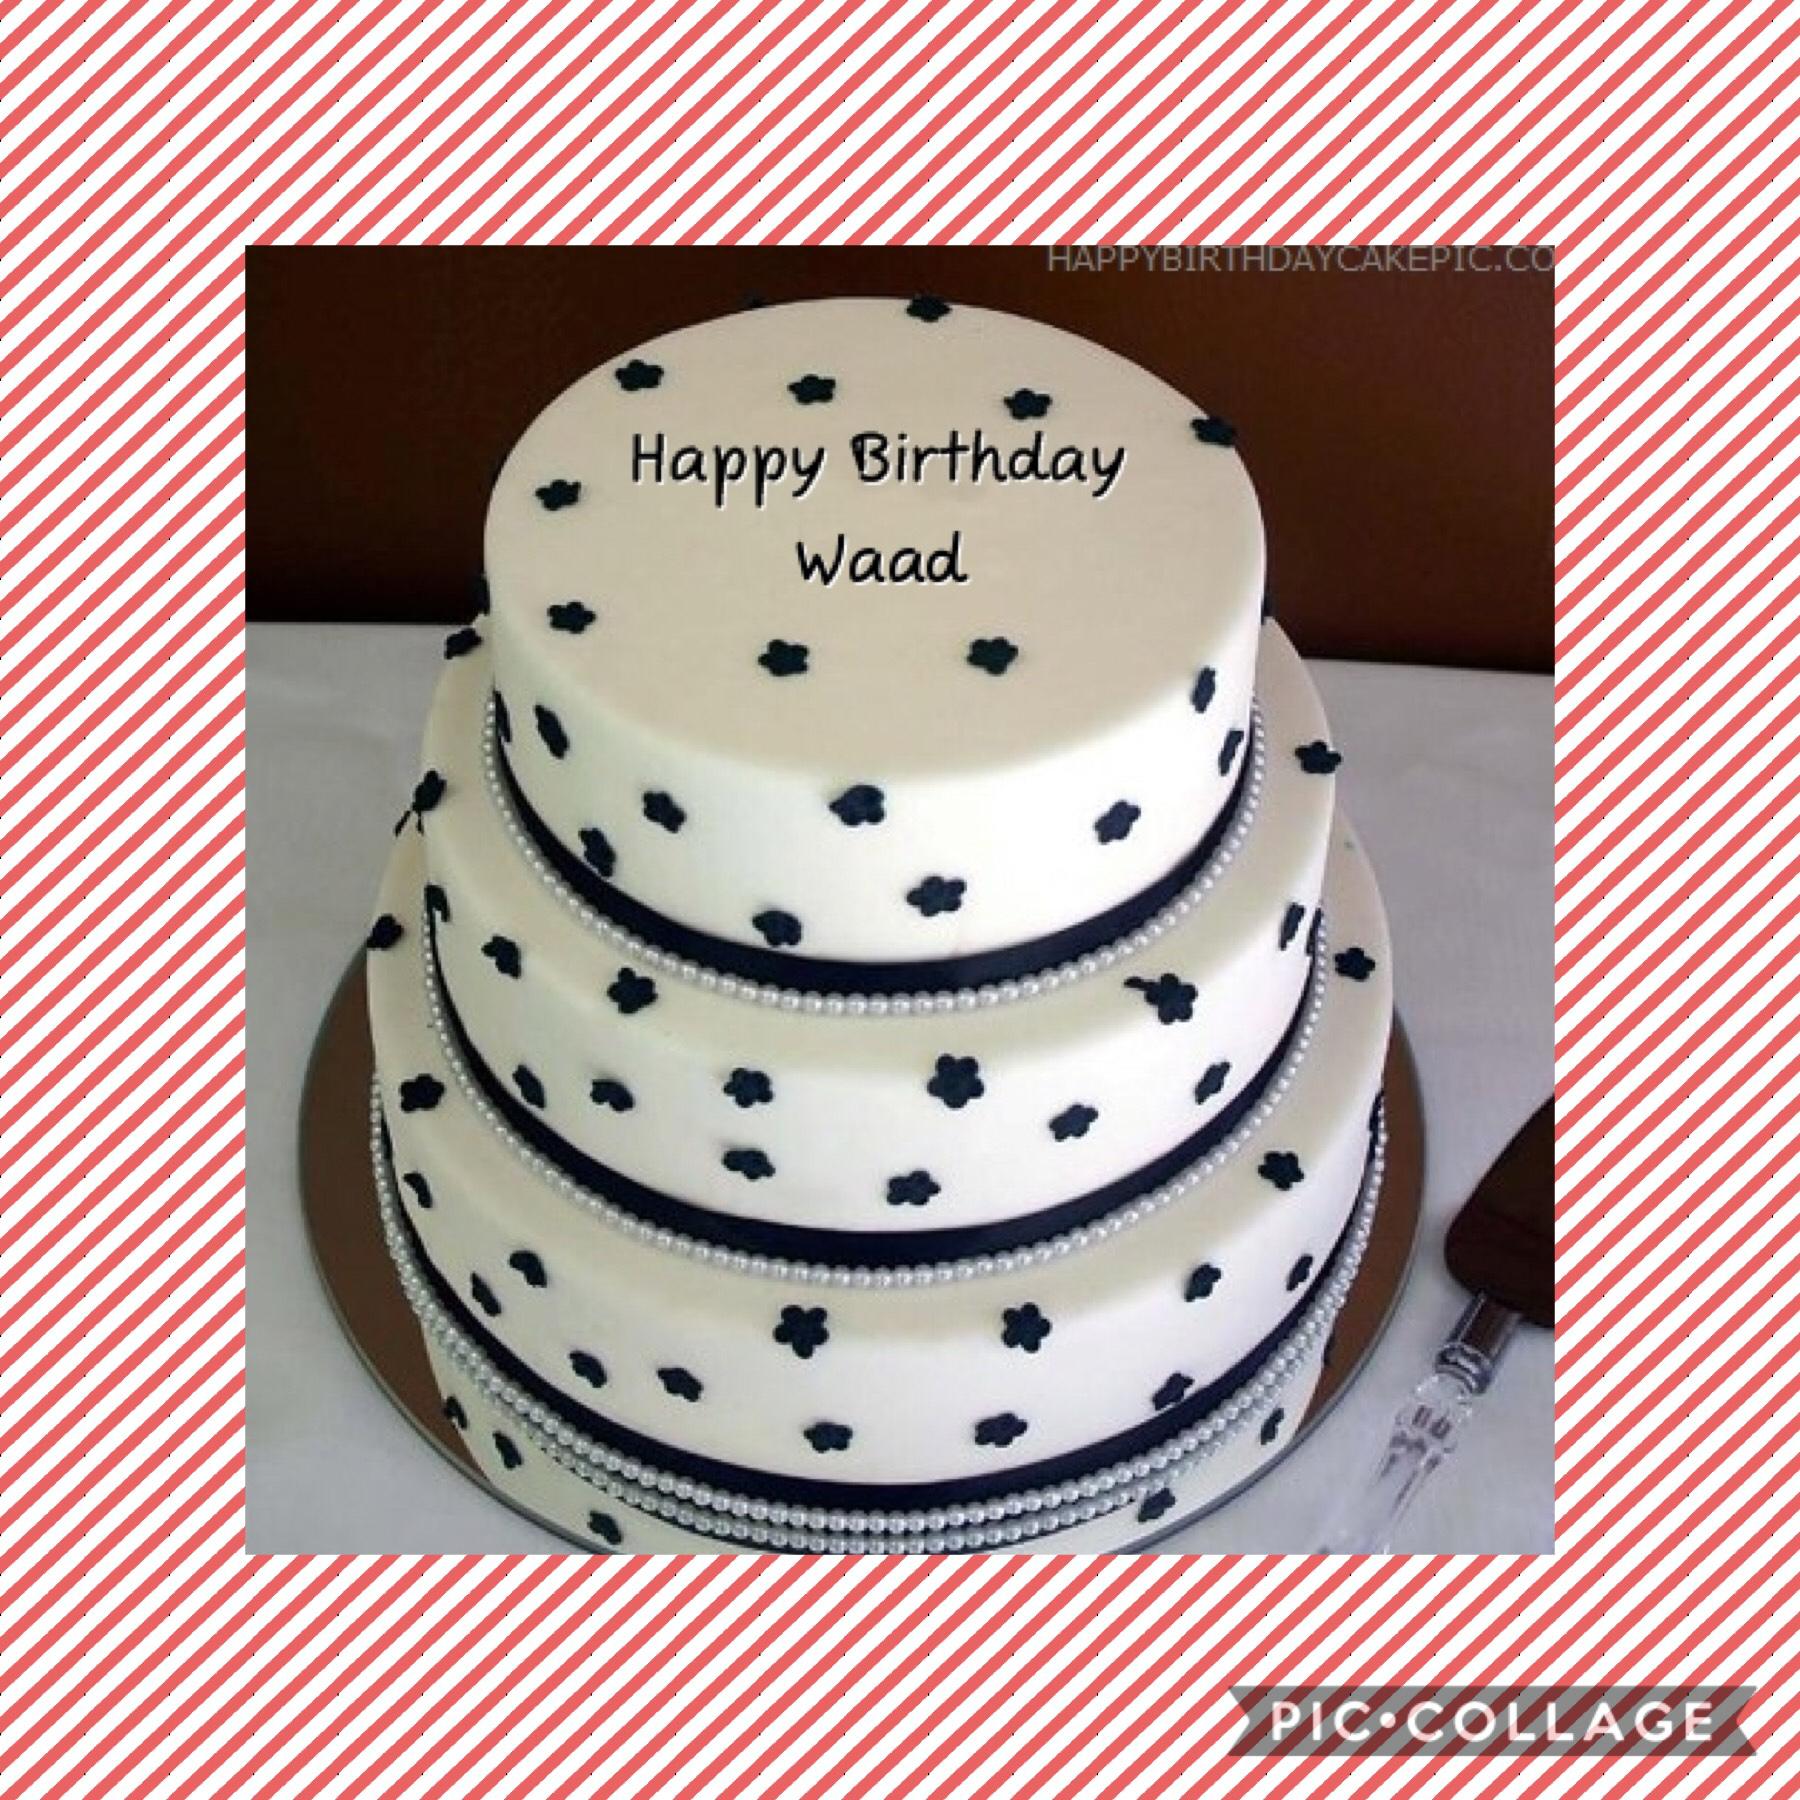 Happy birthday to anyone named waad.

Like to anyone named waad.